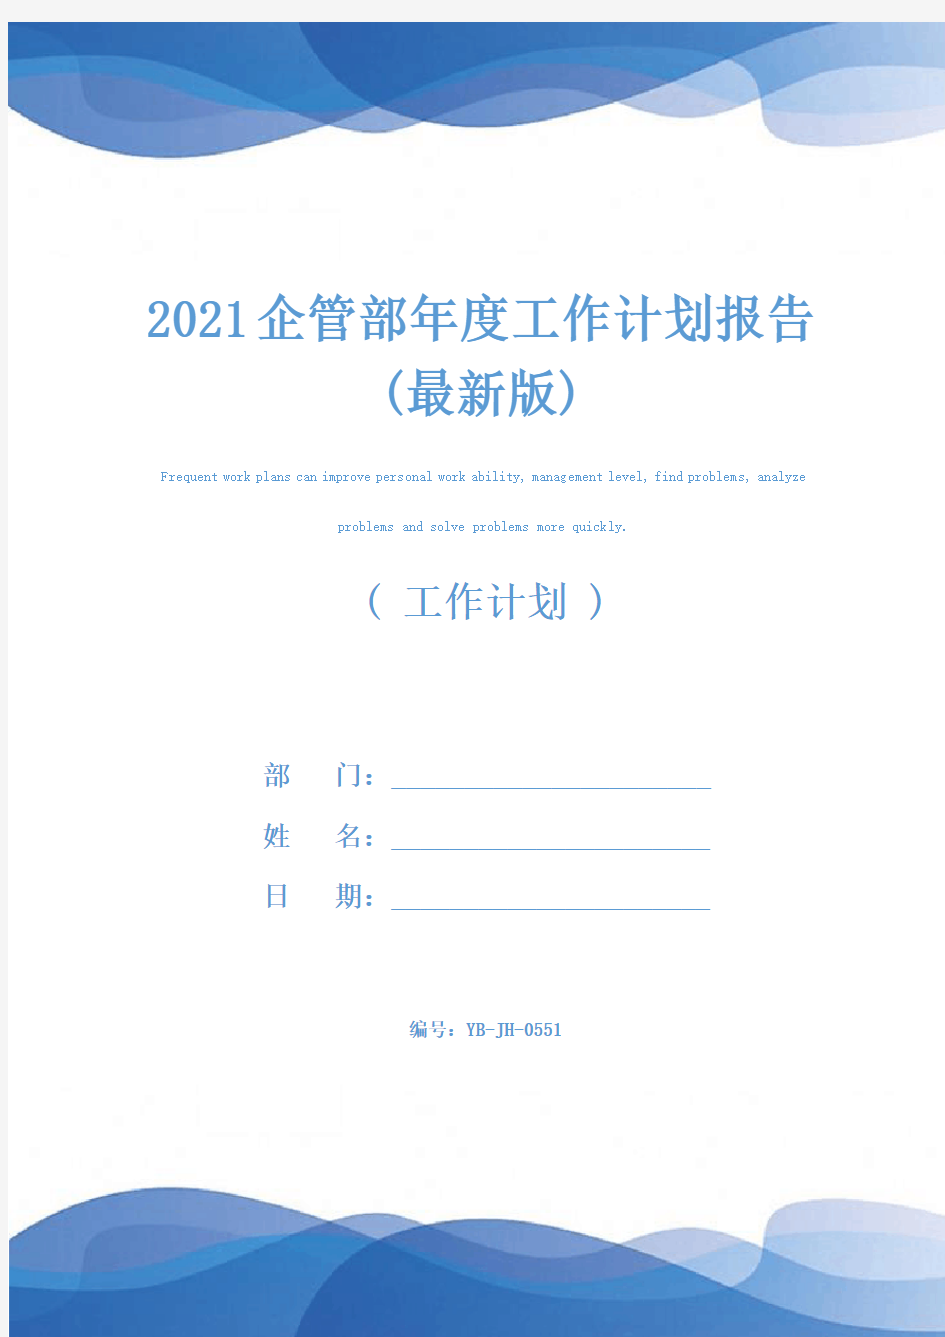 2021企管部年度工作计划报告(最新版)